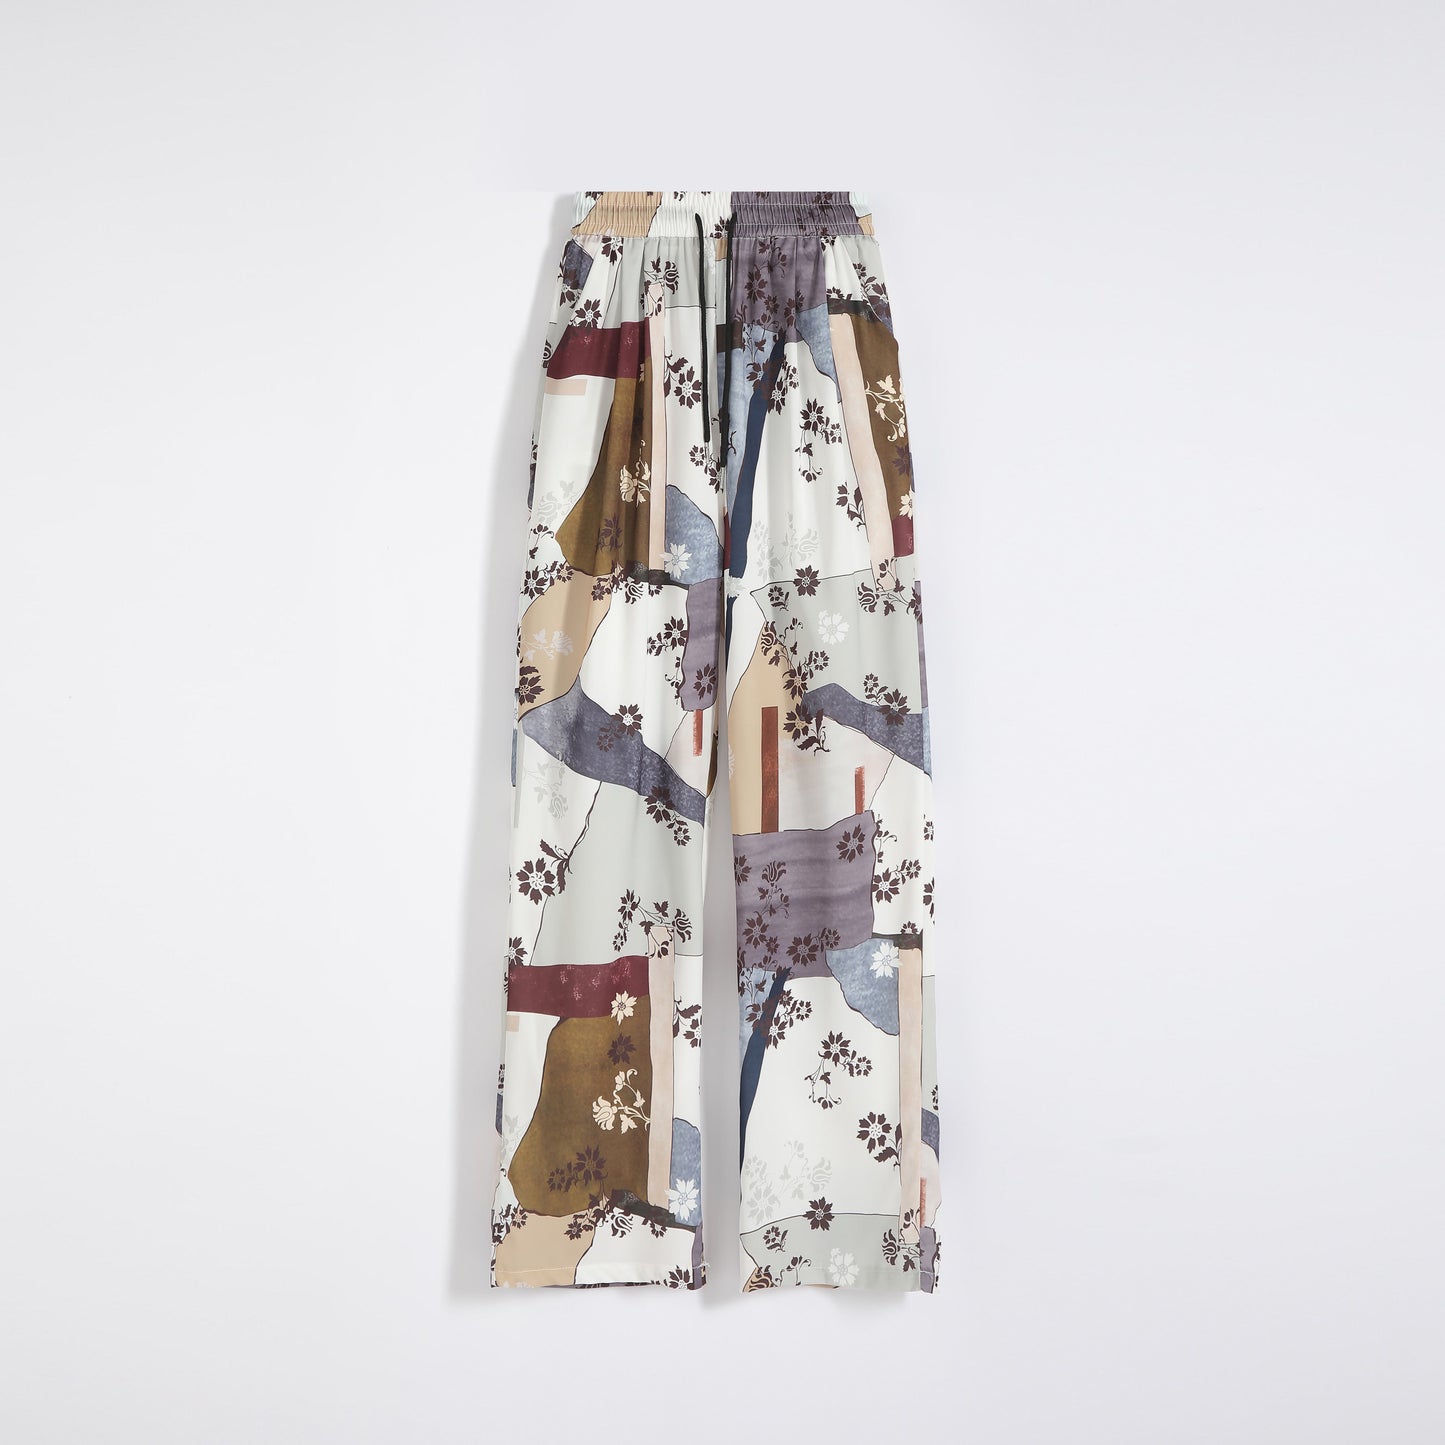 Pantalon long en soie fine imprimée de chiffon, drapé et décontracté, pour la protection solaire.